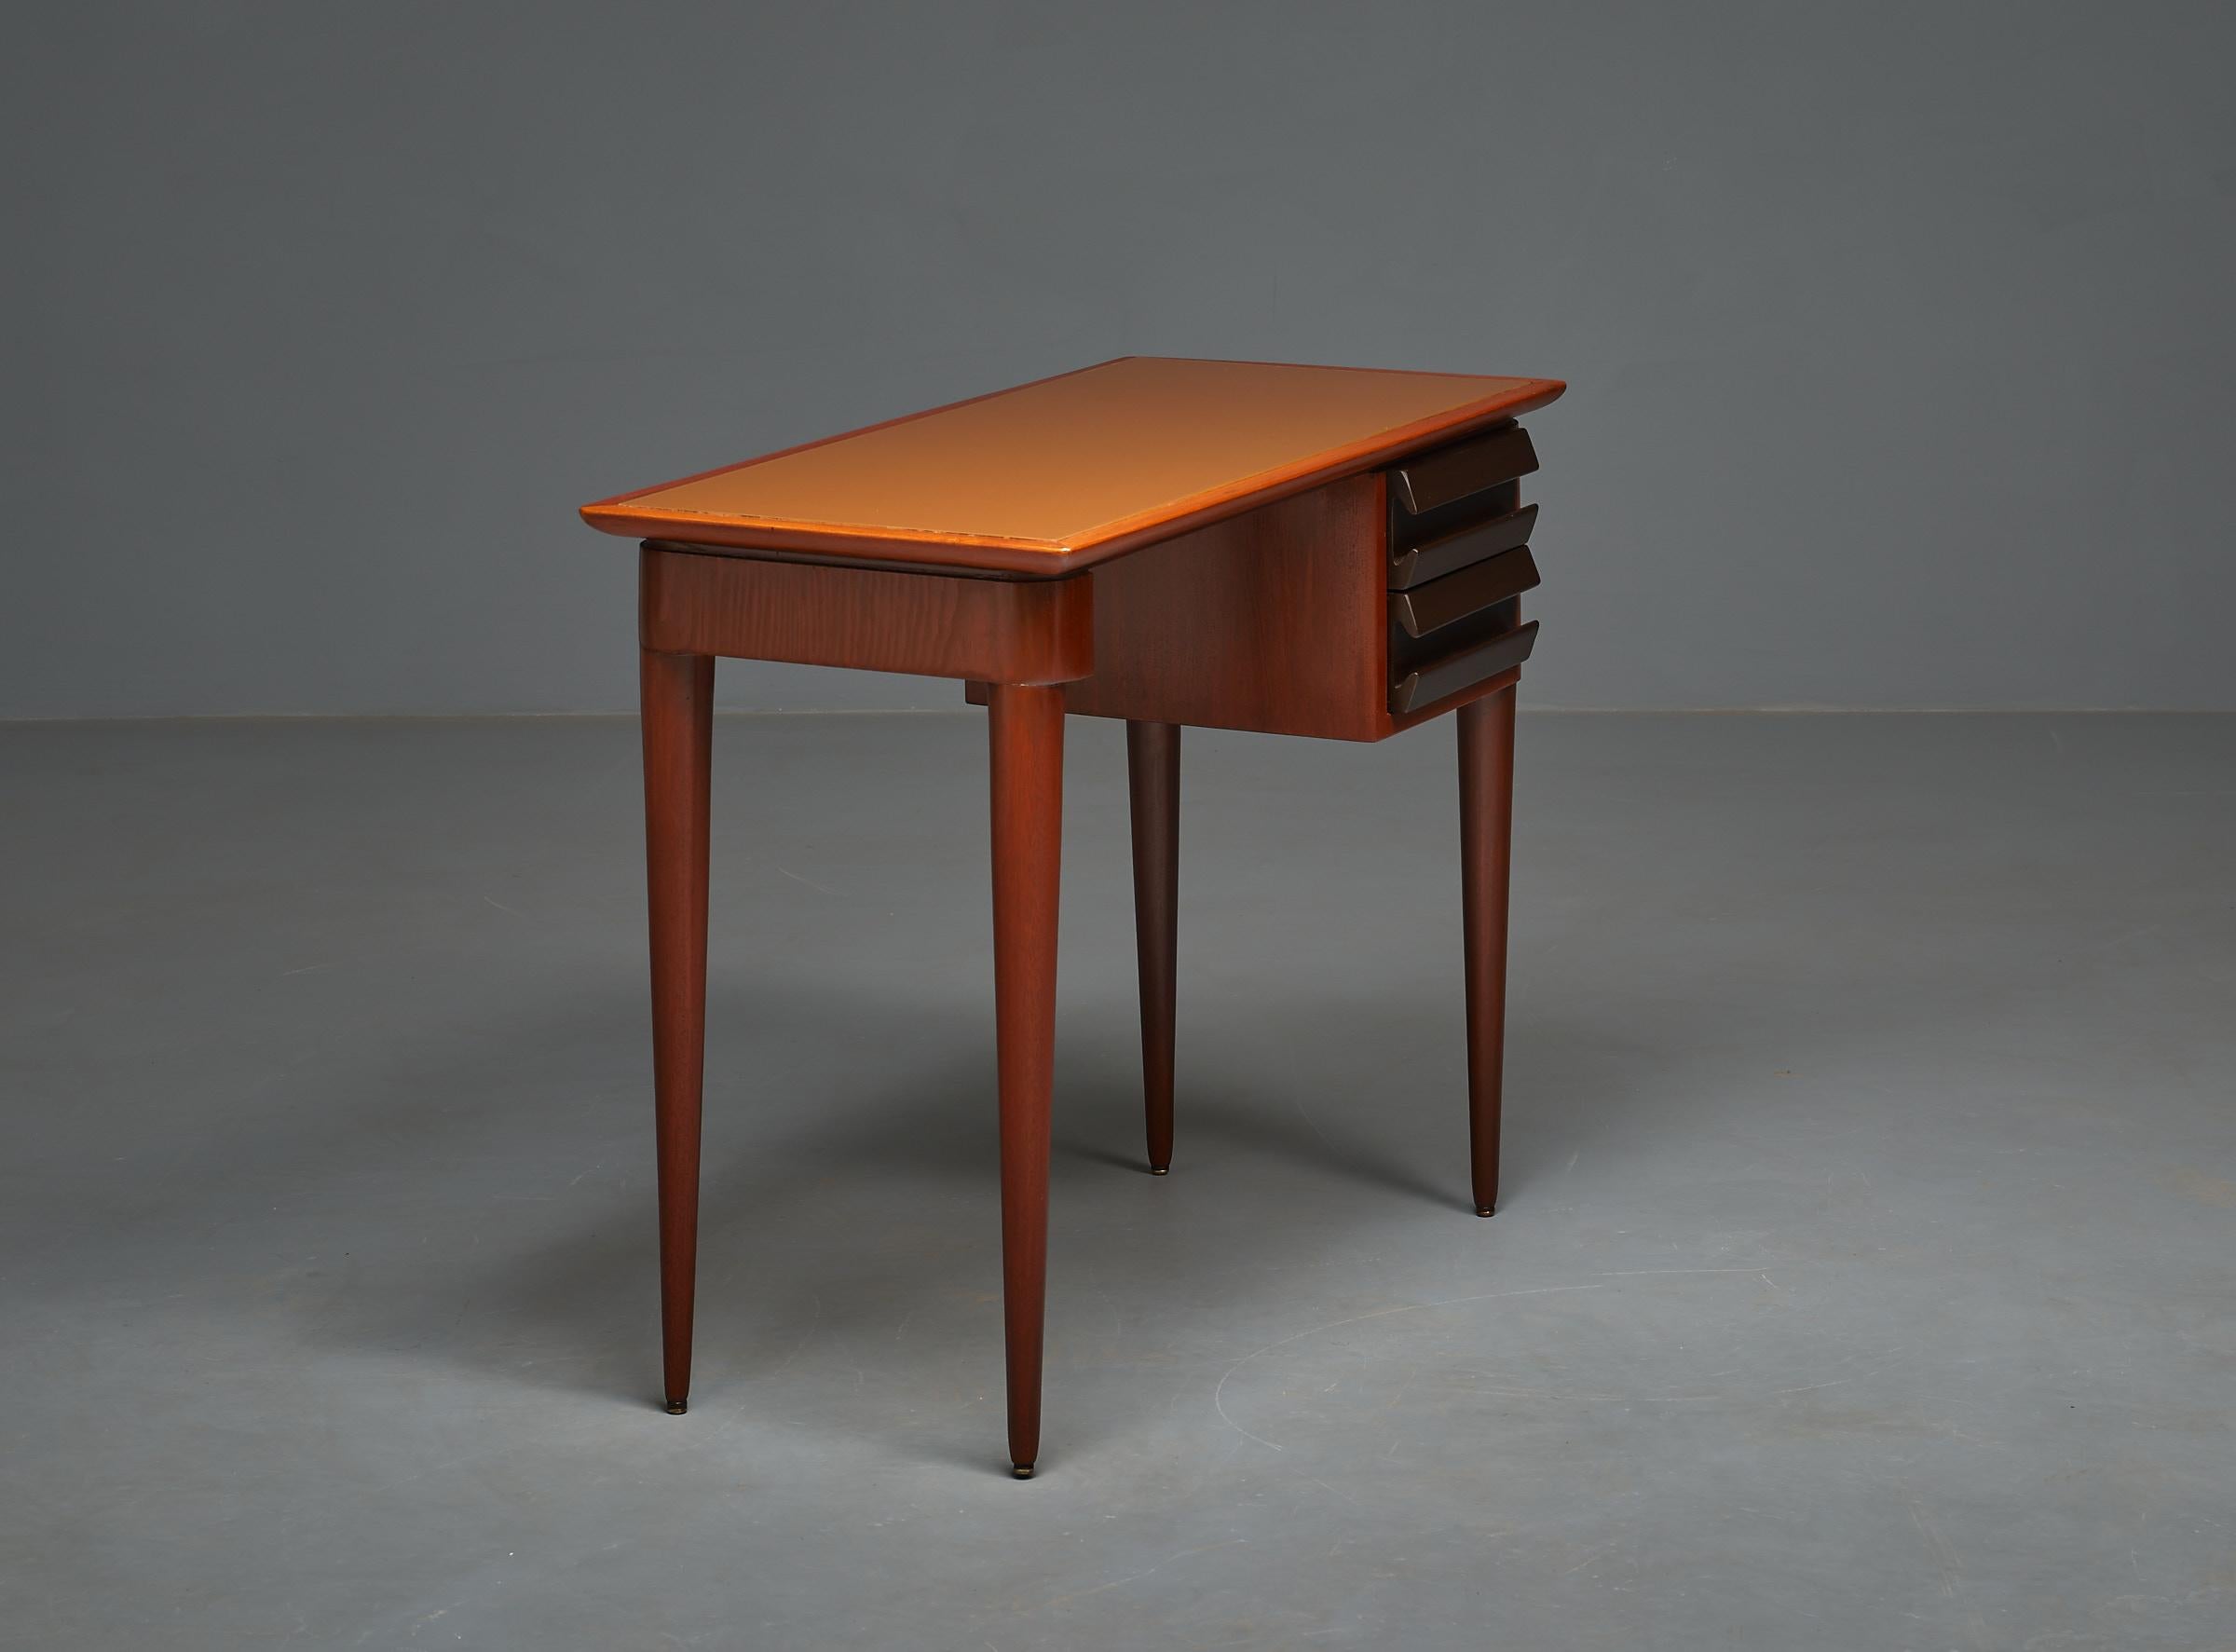 1950s Italian Design Desk by Vittorio Dassi - Exquisite, Elegant, and Restored 1